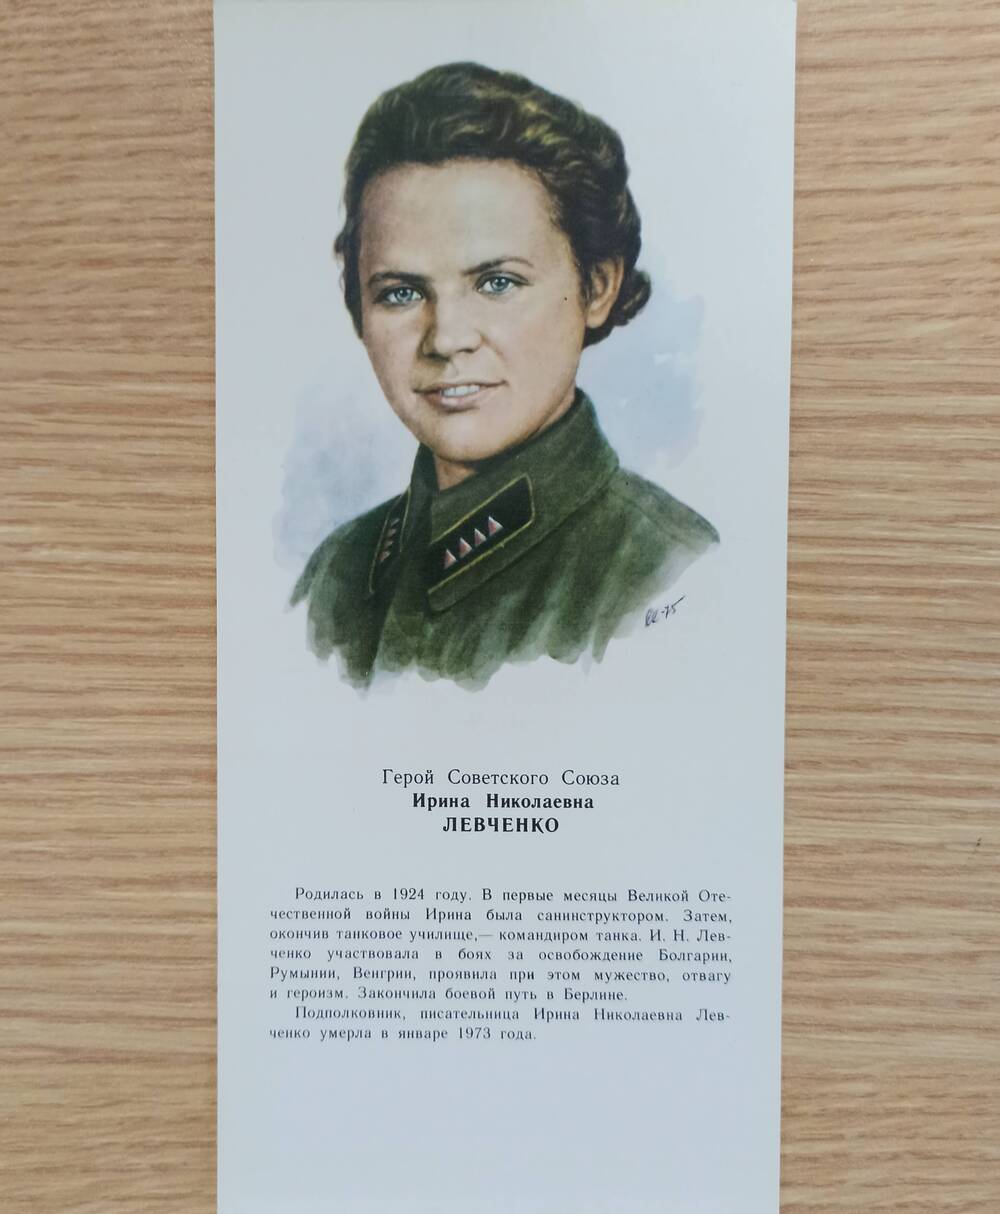 Комплект открыток Женщины- Герои Советского Союза цветные. 1976 г.